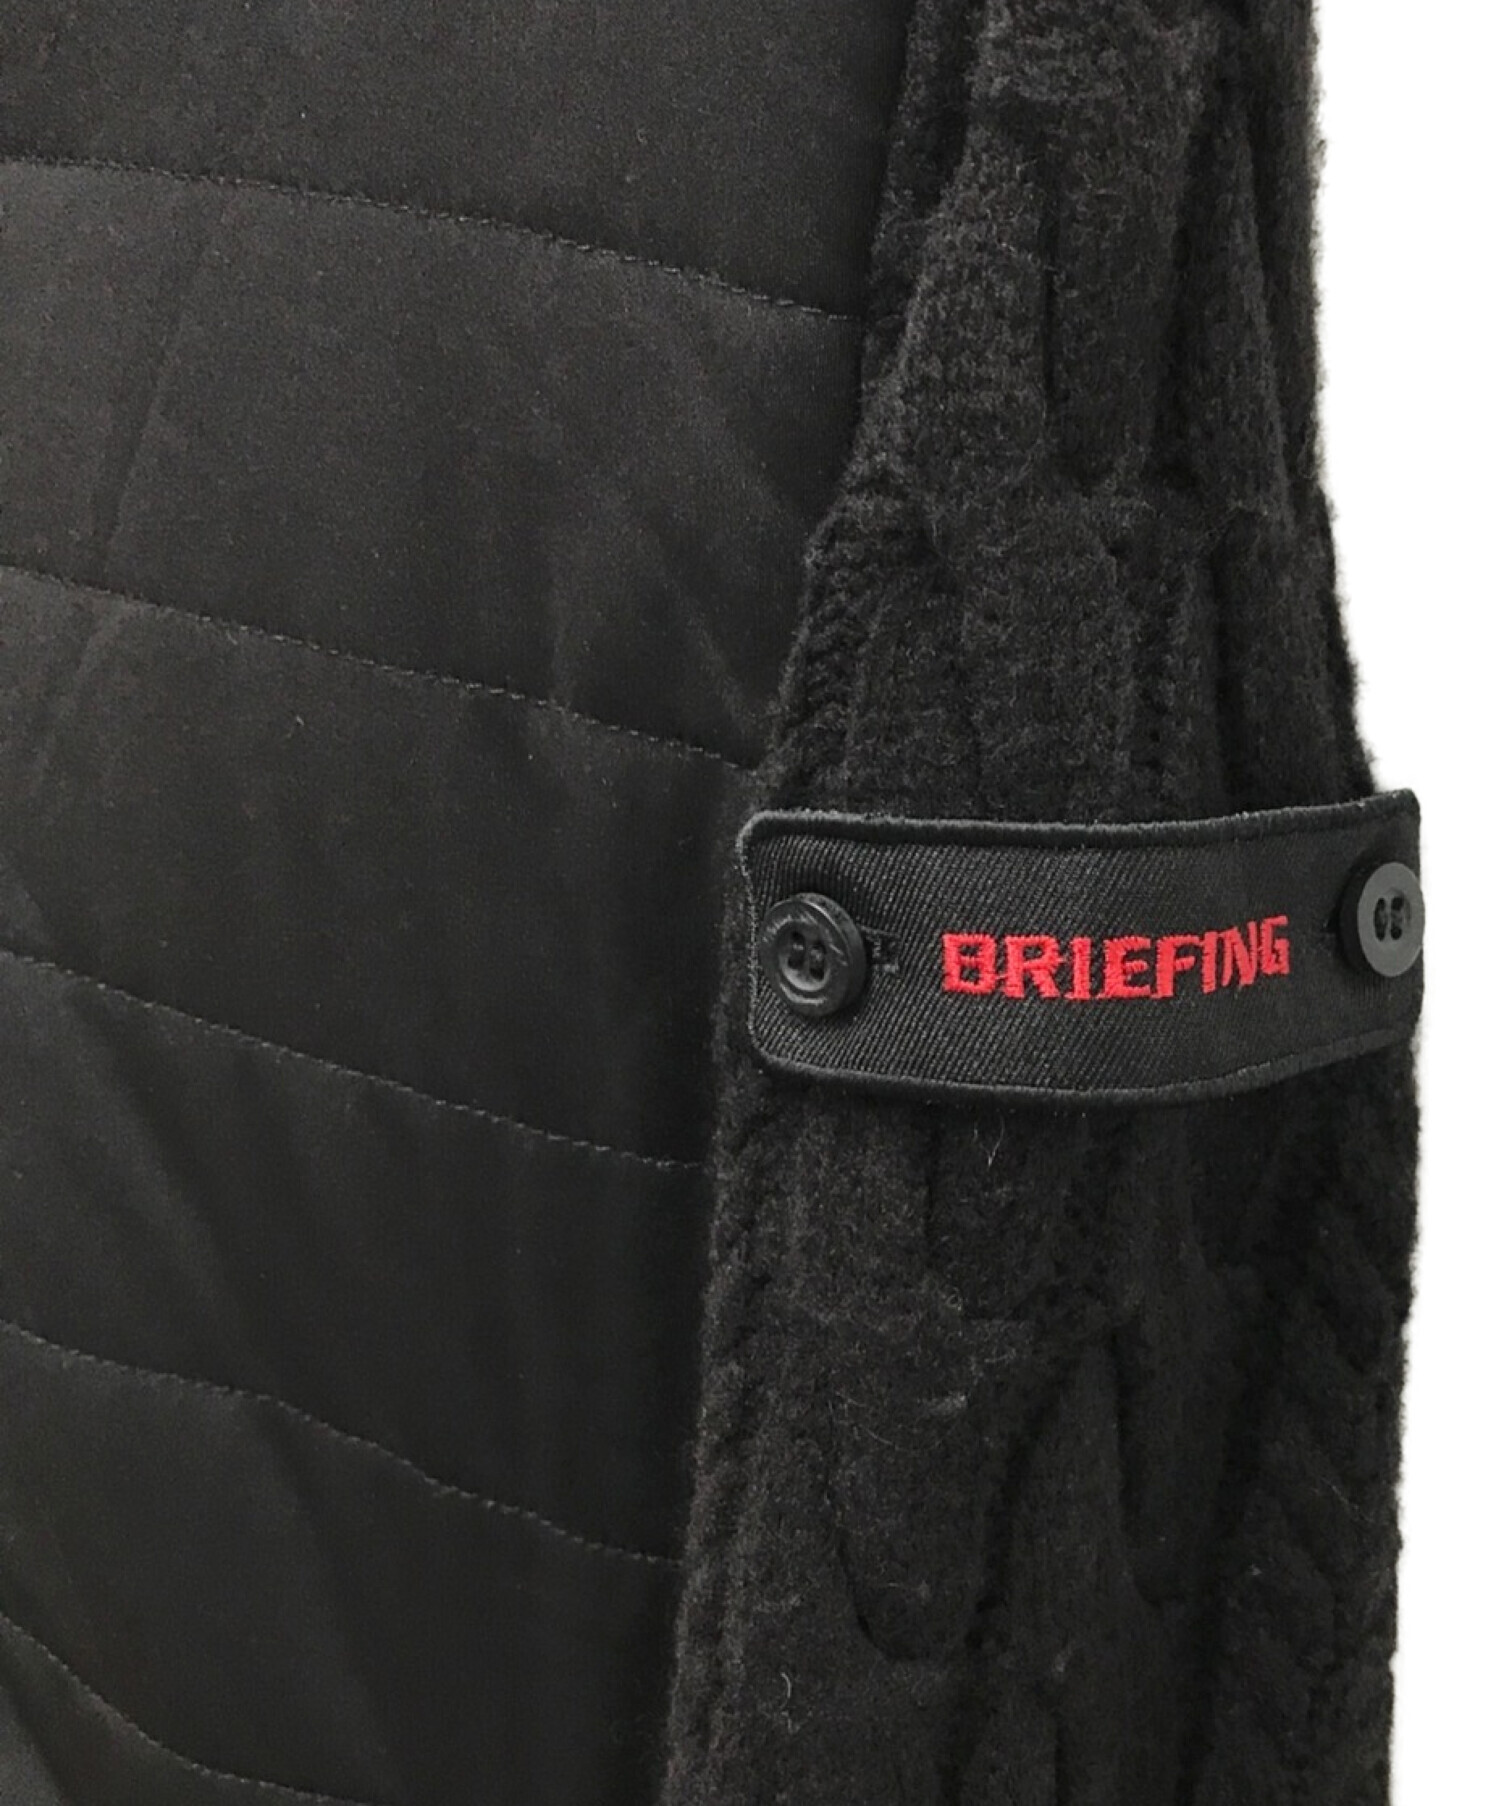 BRIEFING (ブリーフィング) ウインドブロック ニットコンビジャケット ブラック サイズ:M